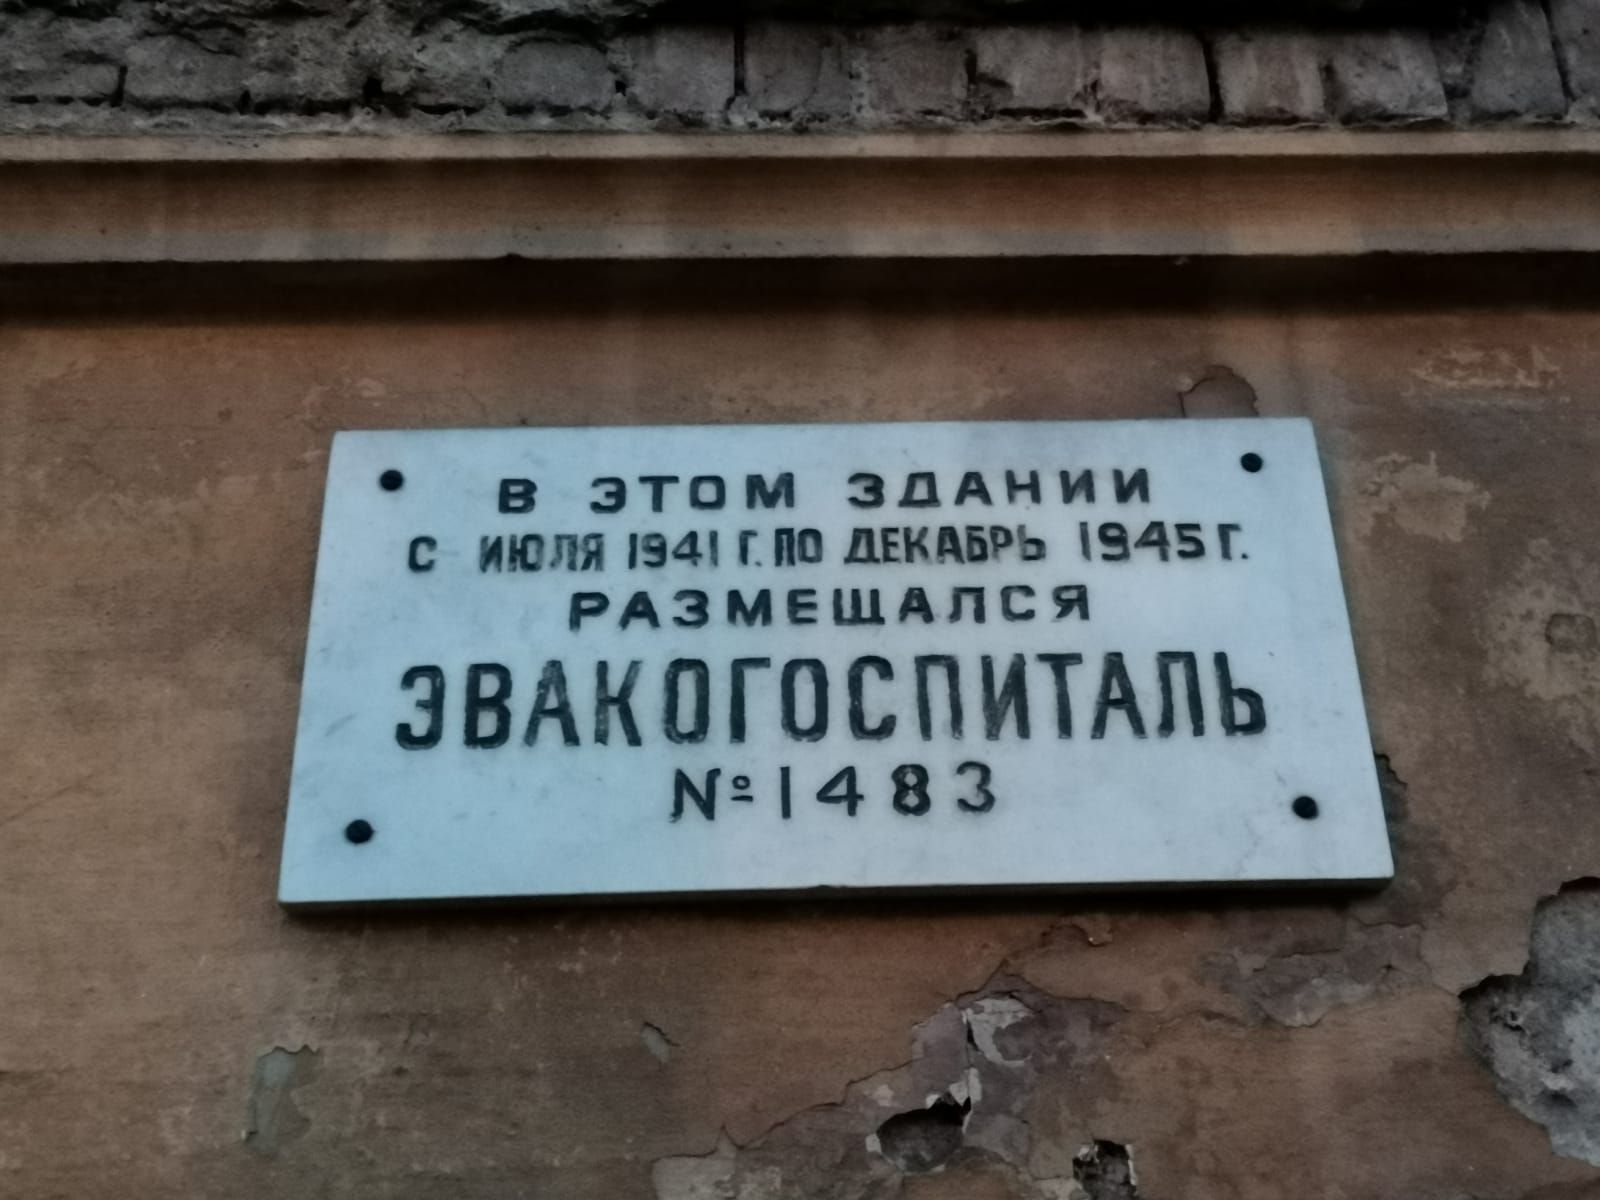 Мемориальная доска на здании, в котором в годы Великой Отечественной войны находился эвакогоспиталь N 1483